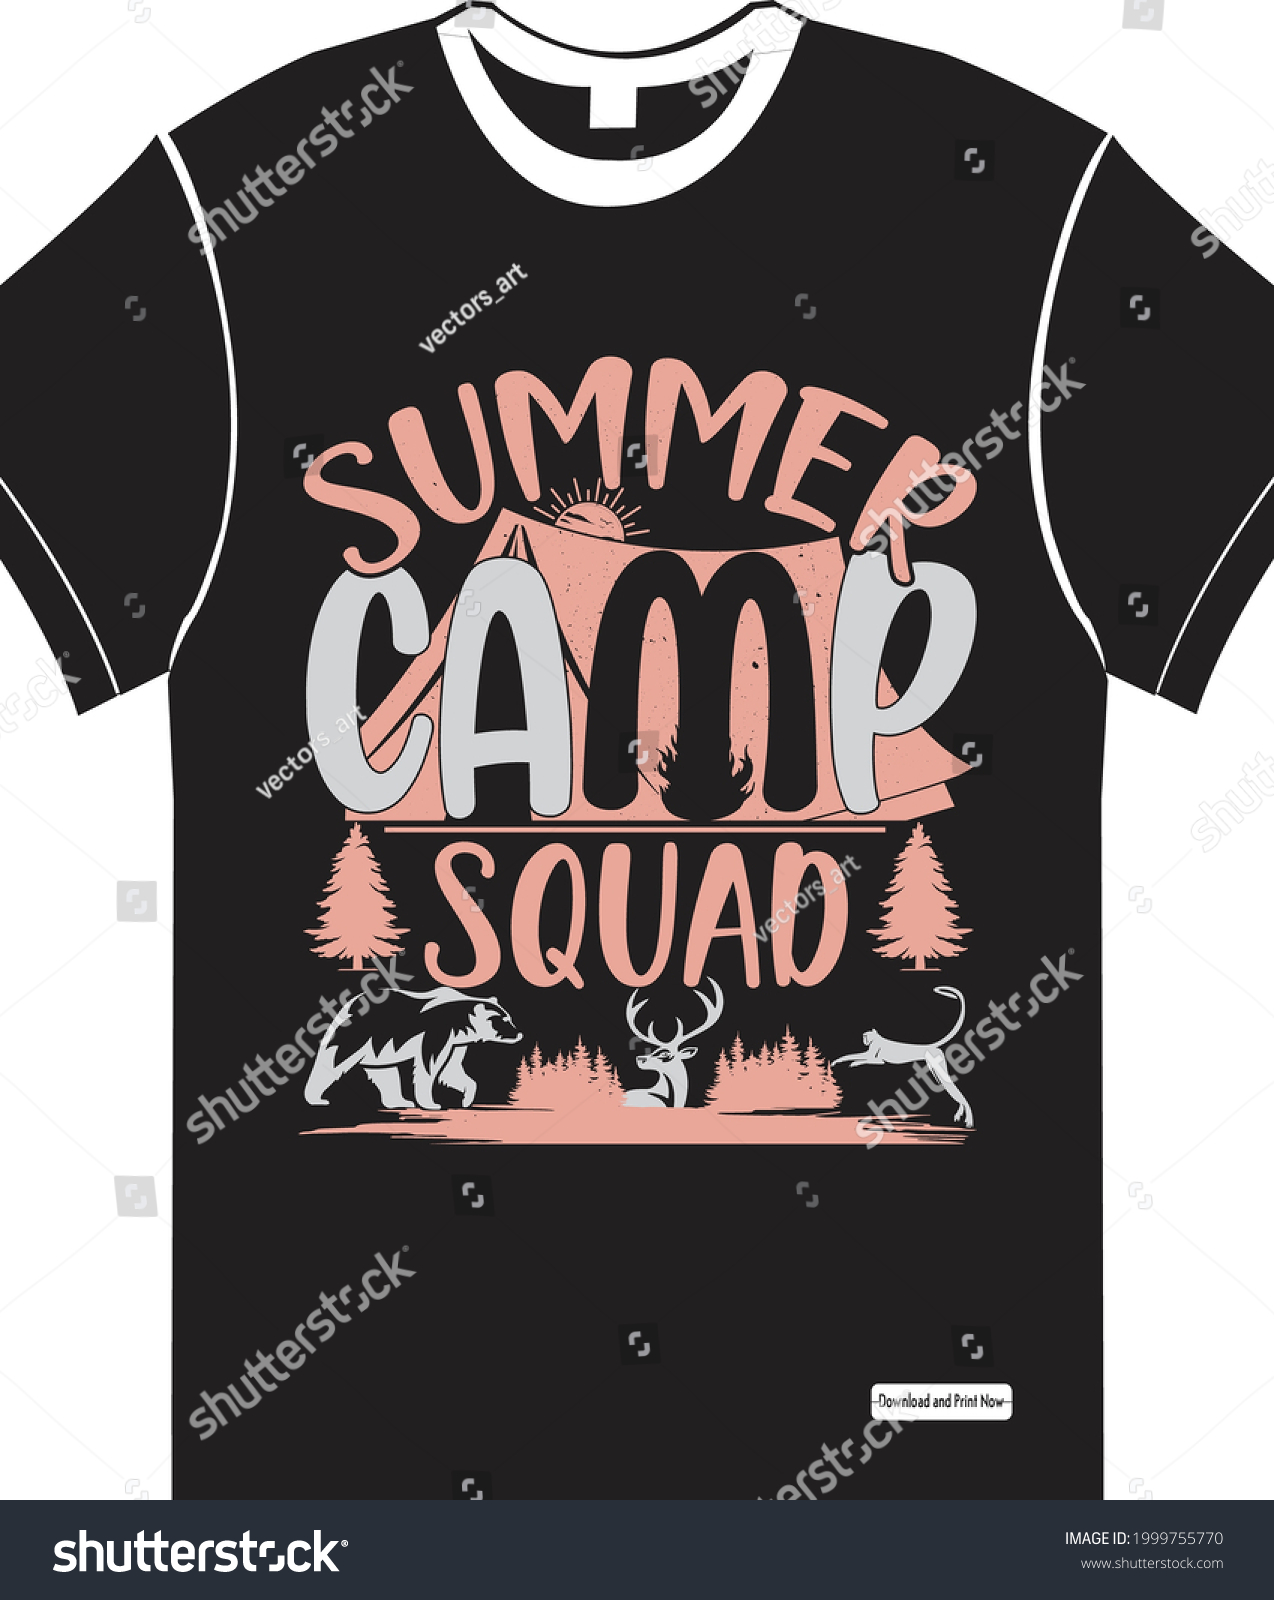 SVG of Summer camp squad, summer svg, ai, eps, jpeg, Png, dxf, Pdf, Happy Camper SVG, Hiking Mountains Campfire Tent T-Shirt, instant download, Camp life SVG, Digital file svg